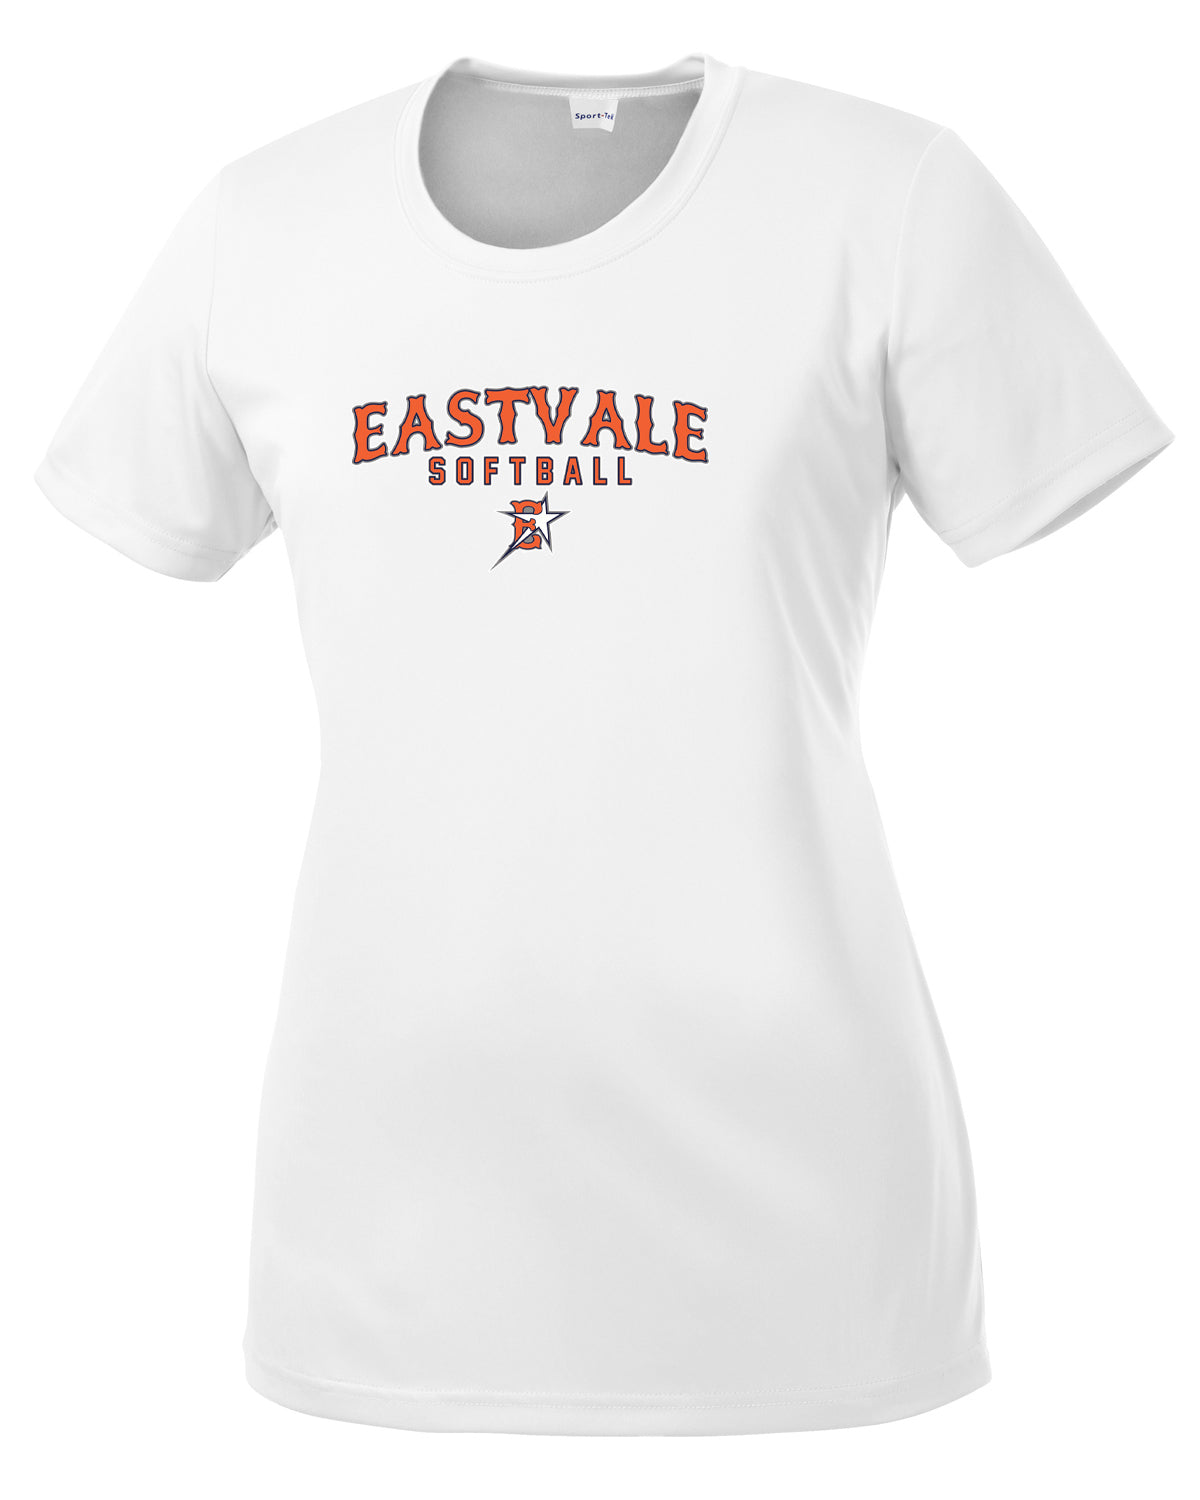 Eastvale Girl's Softball Women's Performance Tee